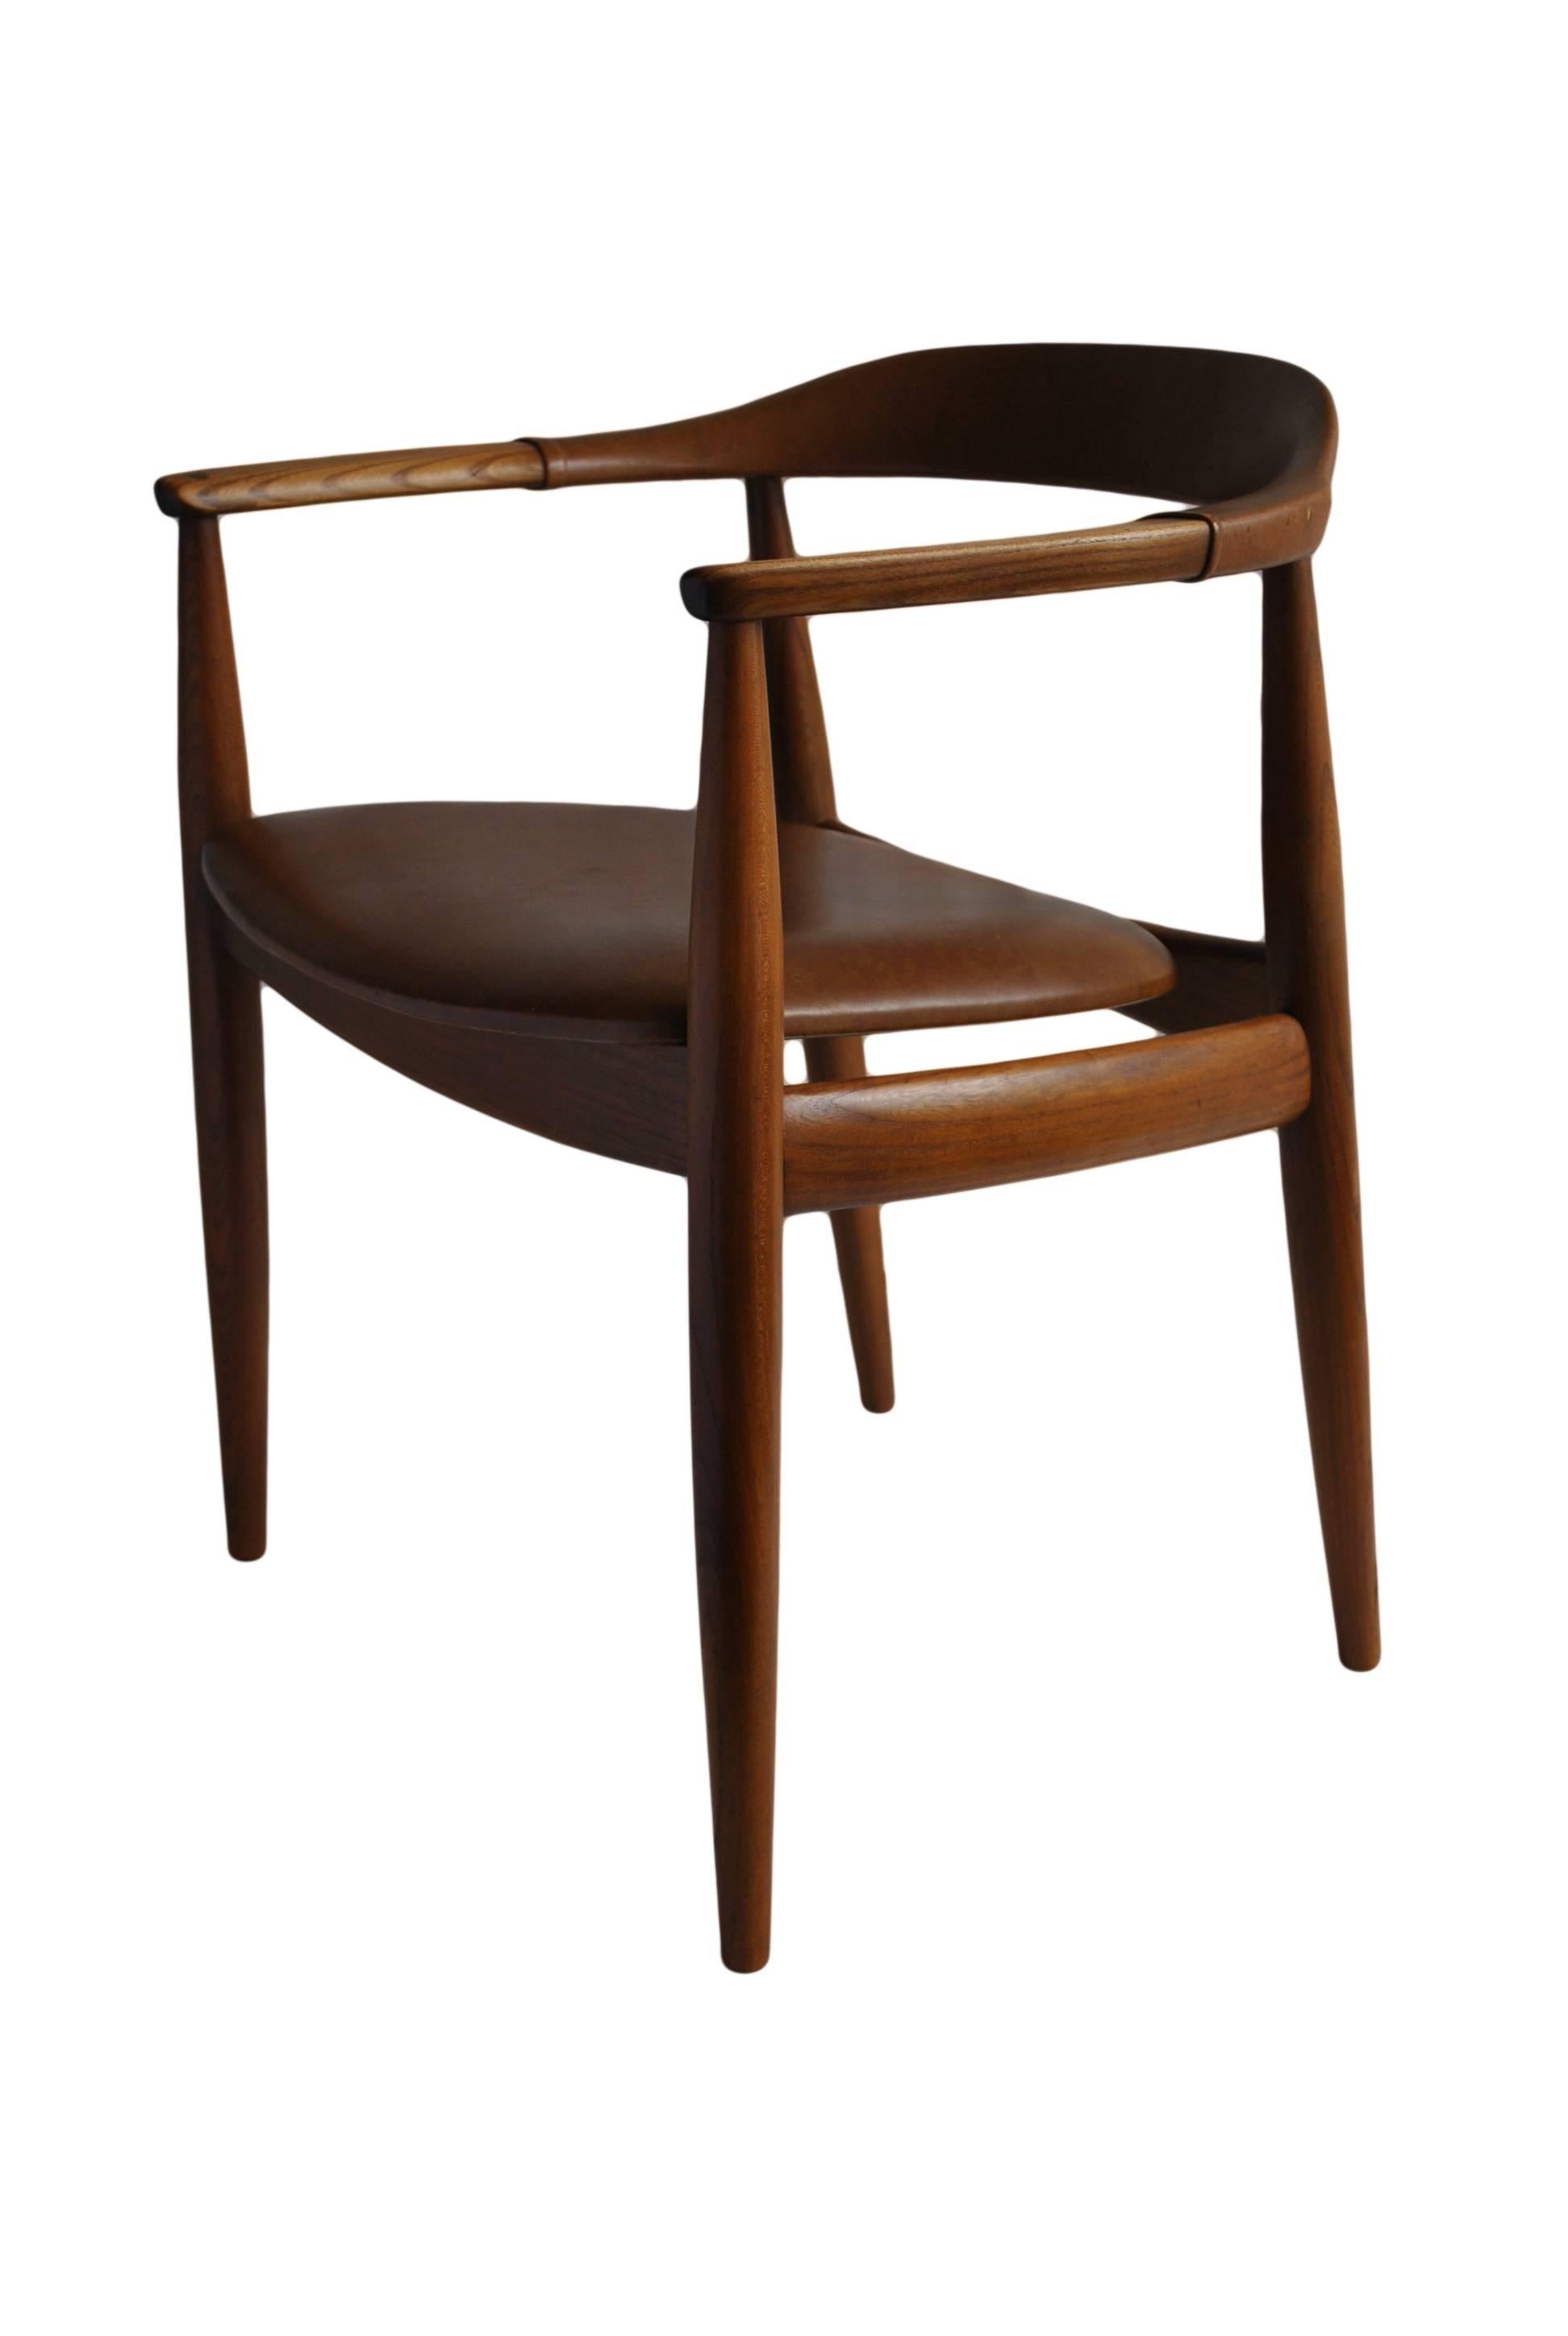 Danish Illum Wikkelso Chair for N. Eilersen